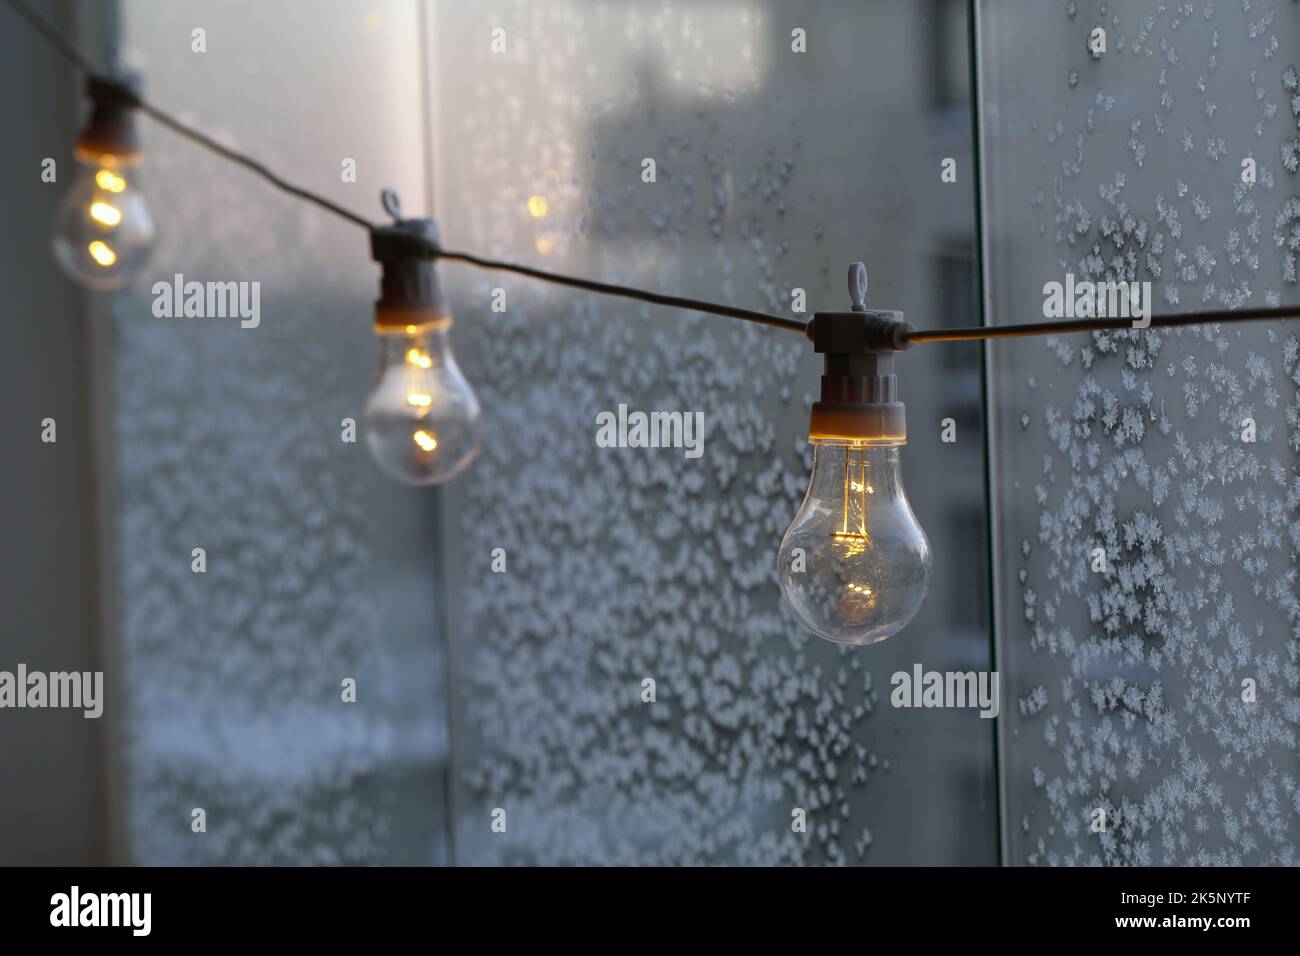 Semplice lampadina decorativa appesa su un balcone durante una giornata fredda. Vetro con cristalli di ghiaccio sullo sfondo. Energia, crisi energetica ed elettricità. Foto Stock